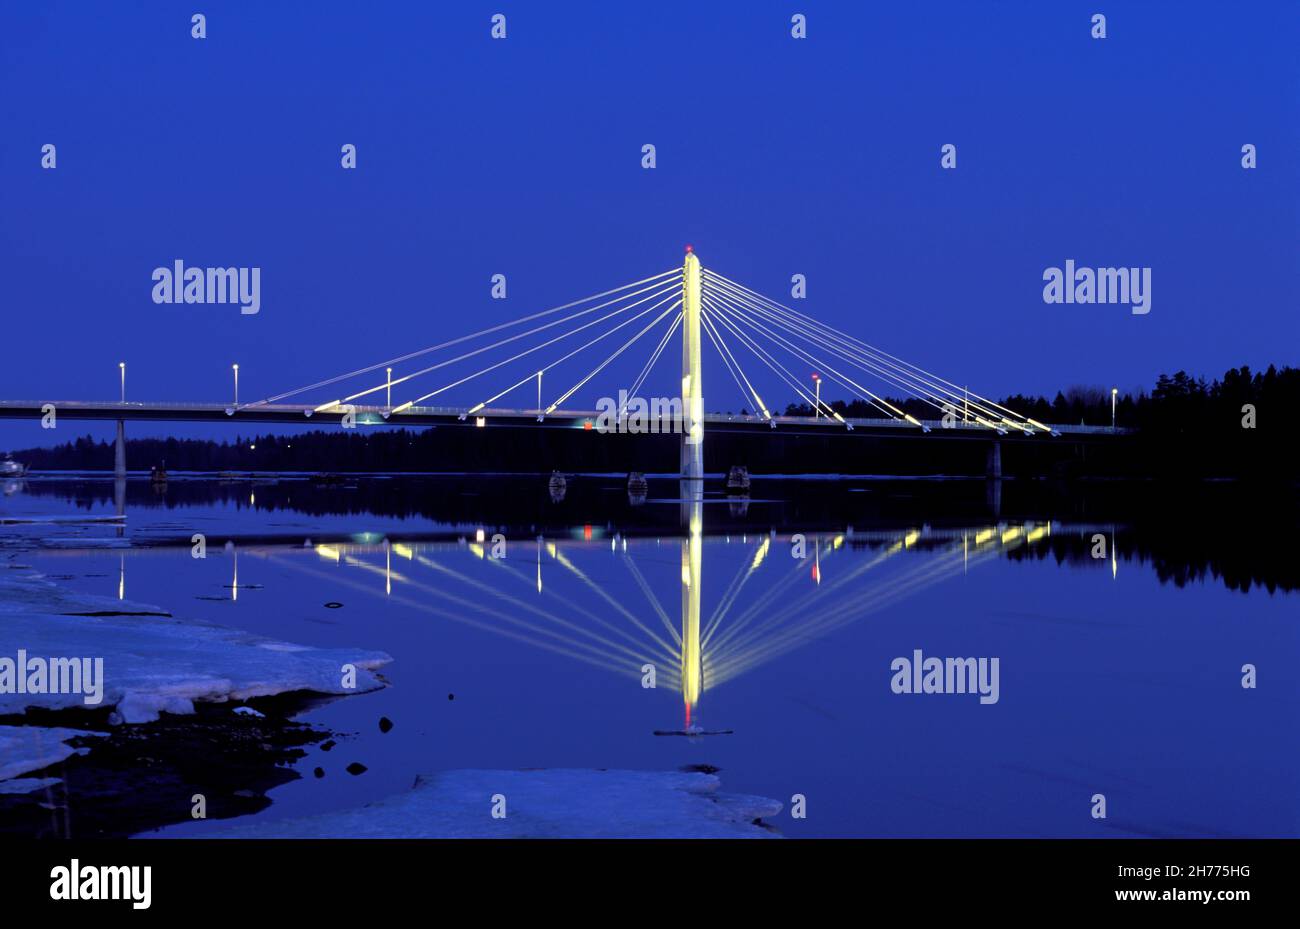 Pylonbrücke. Kolbäcksbron, Umea in 2004, analog. Beleuchtete Brücke in der schwarzen Nacht. Herbst und Nacht. Stockfoto